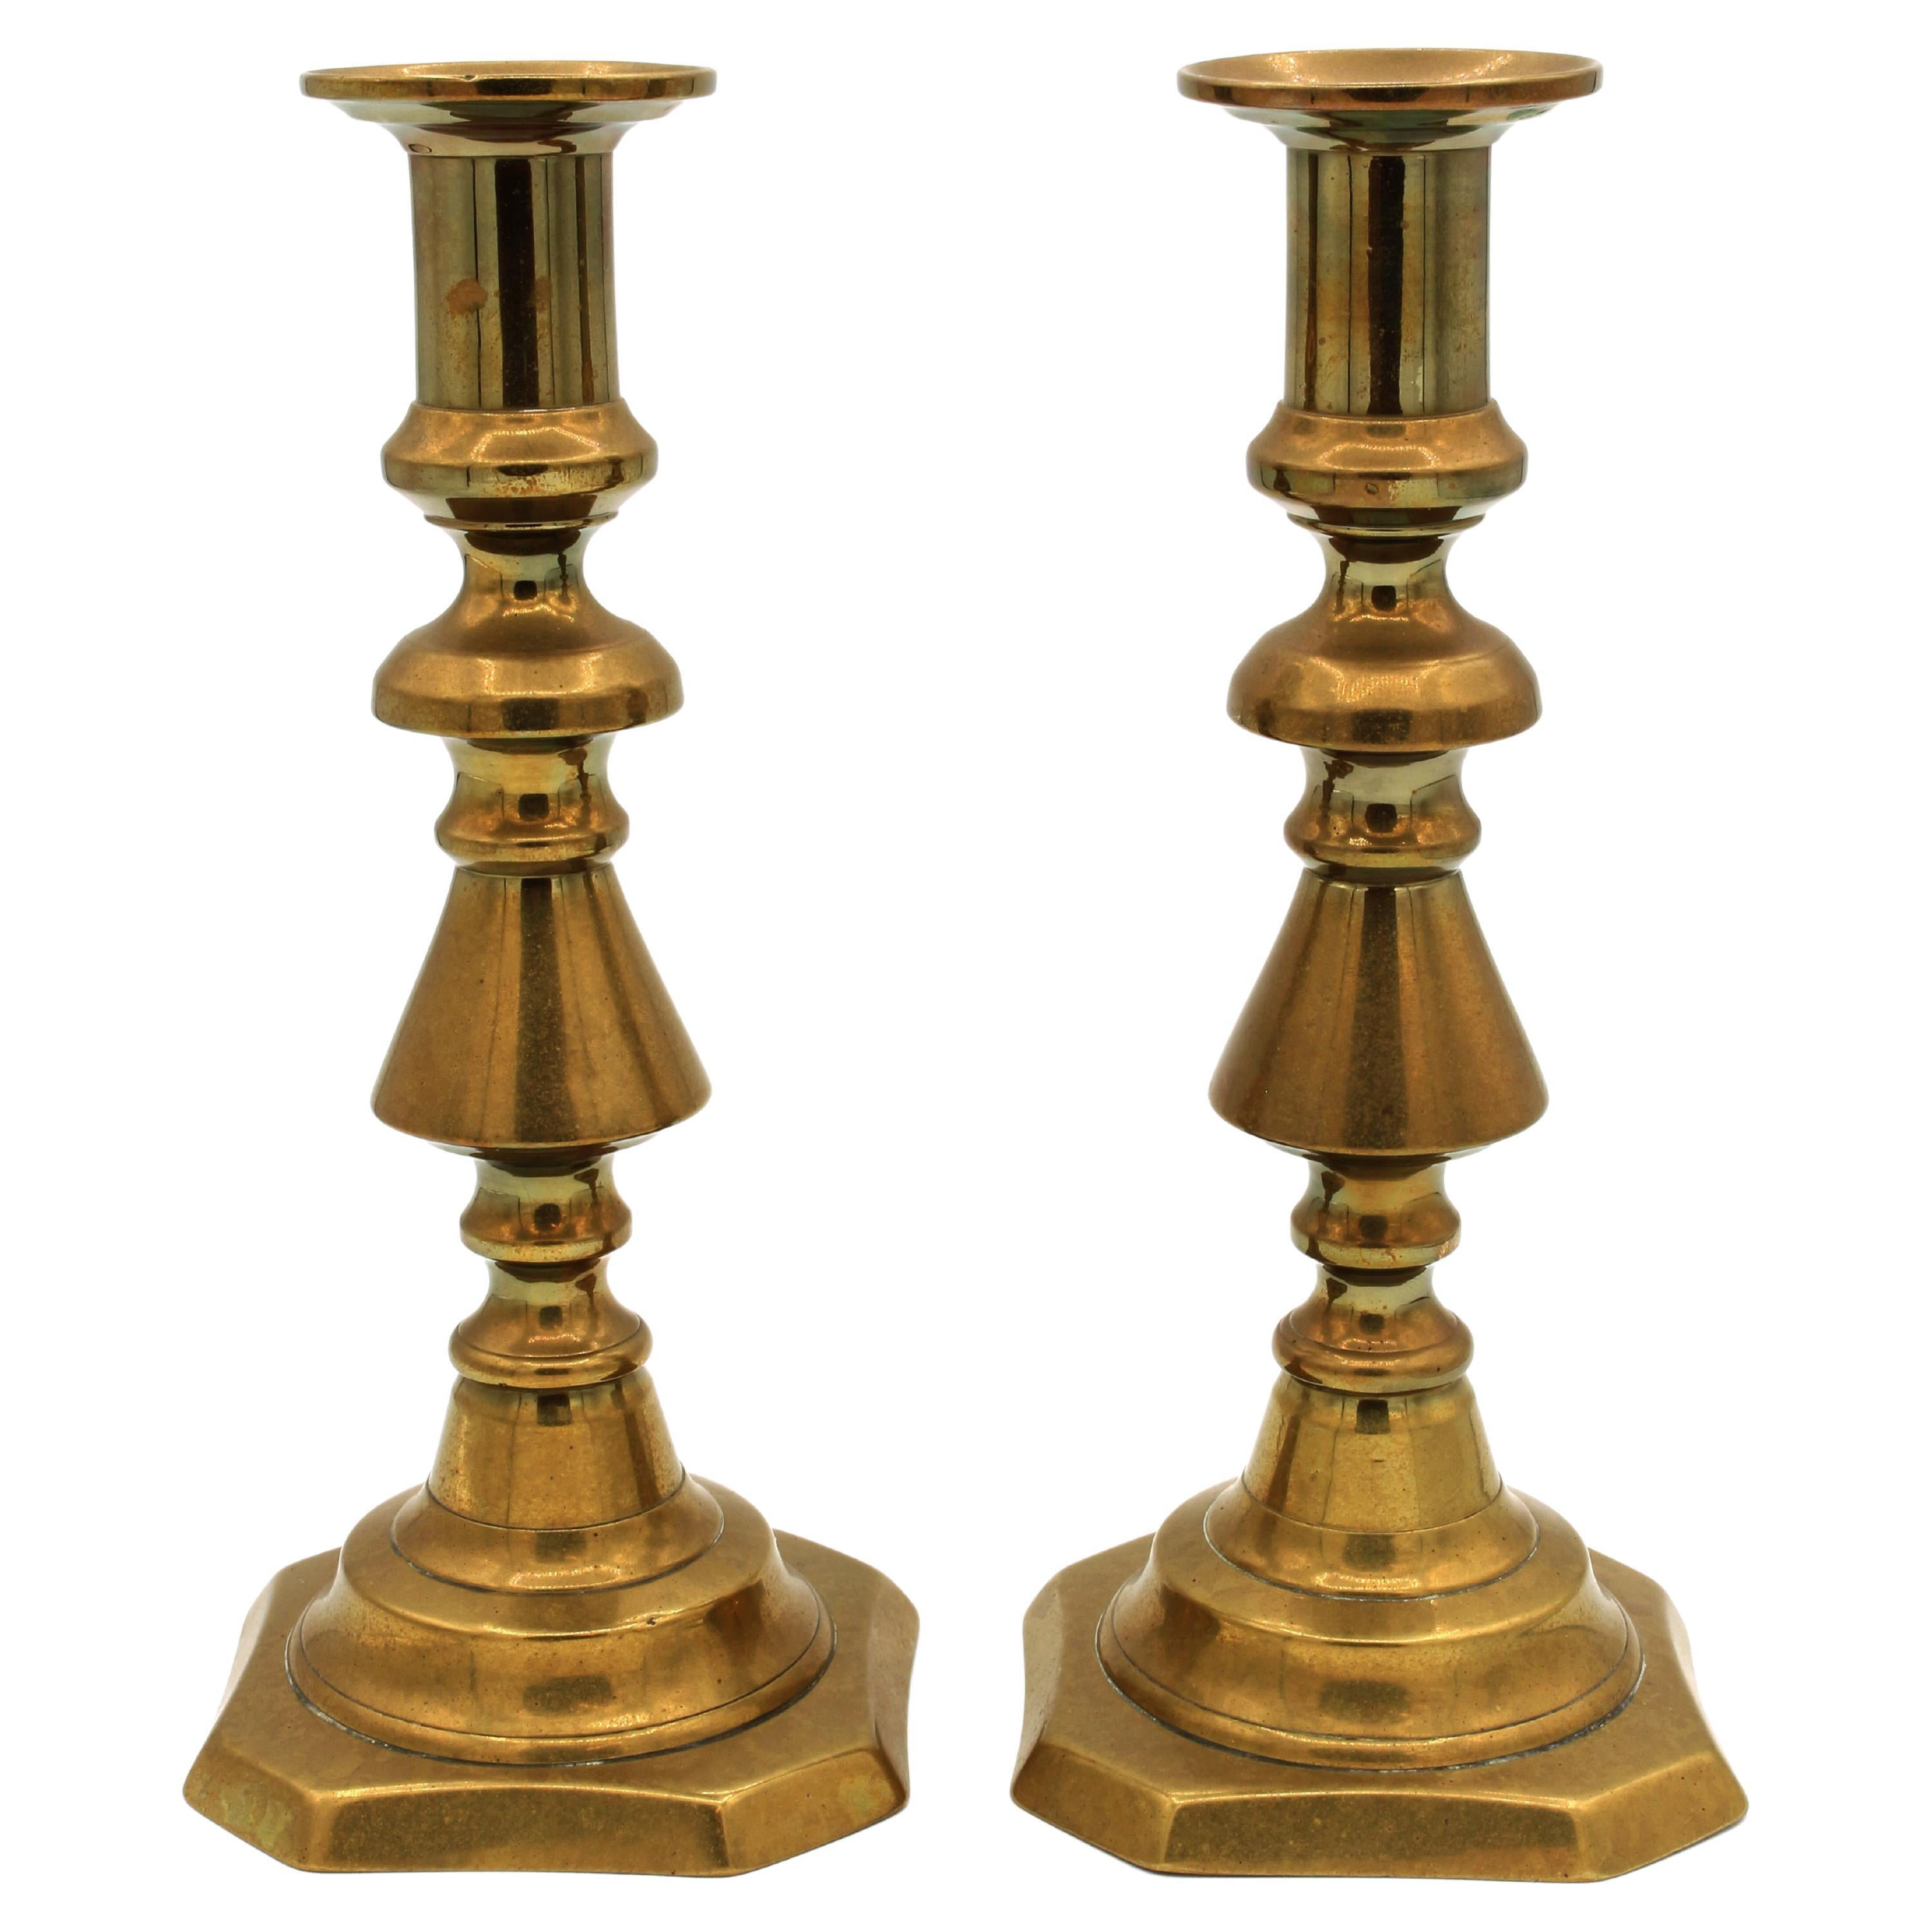 CIRCA 1860-1880 Paar englische Messing-Kerzenleuchter